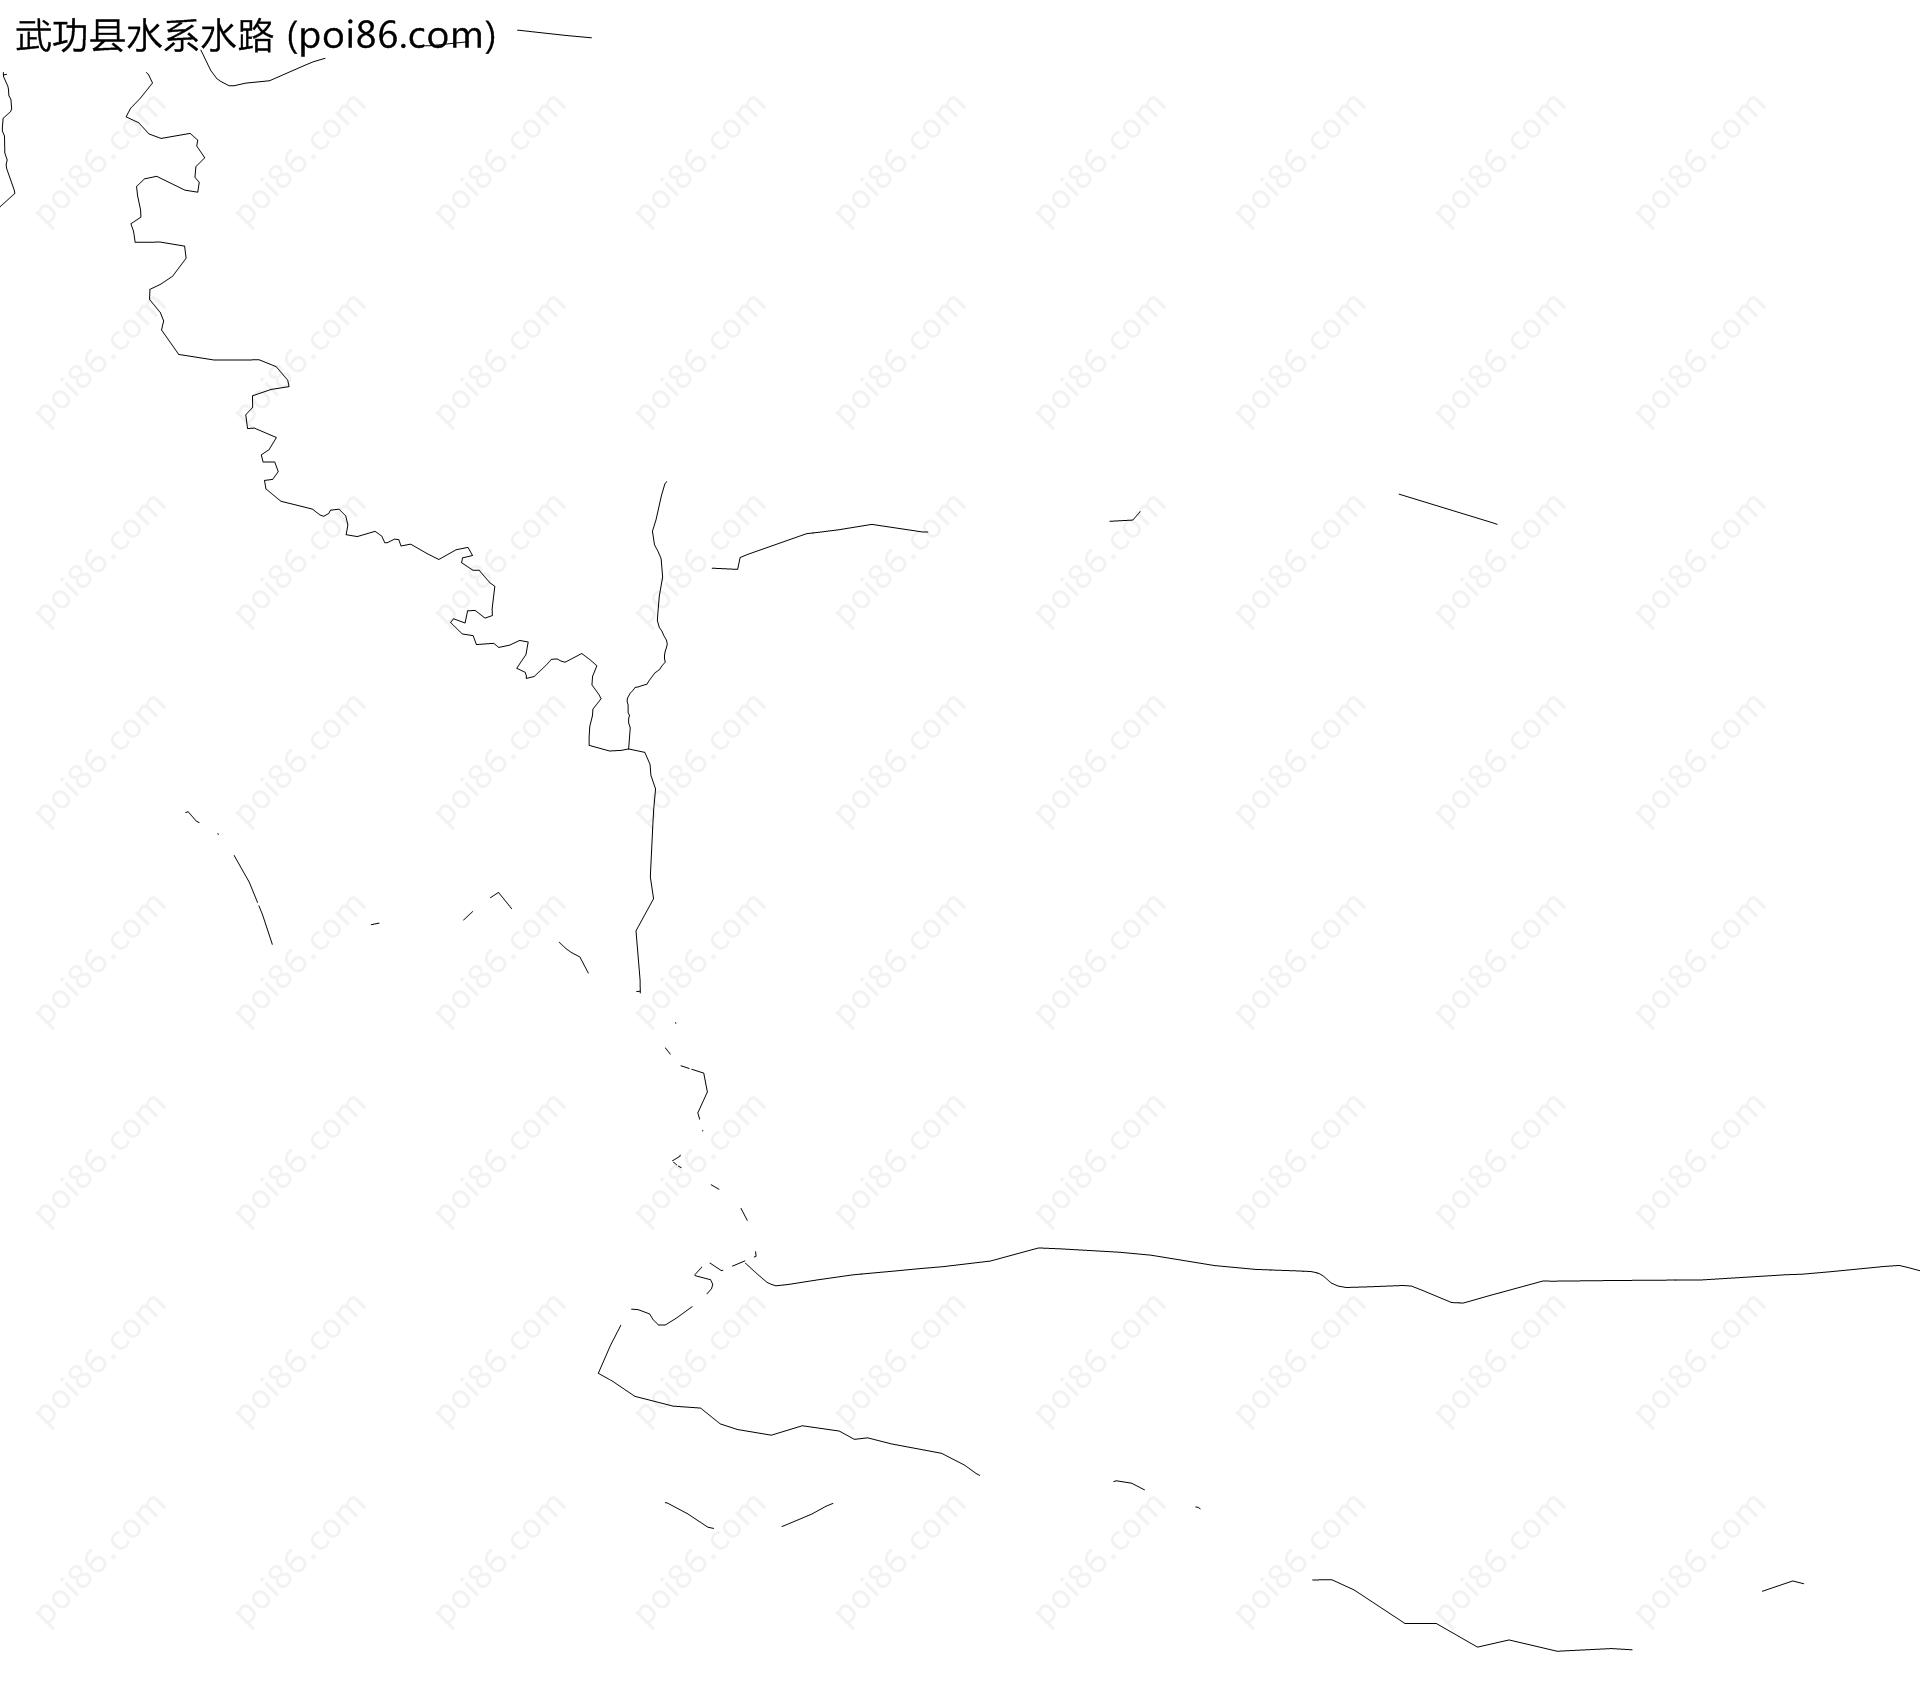 武功县水系水路地图